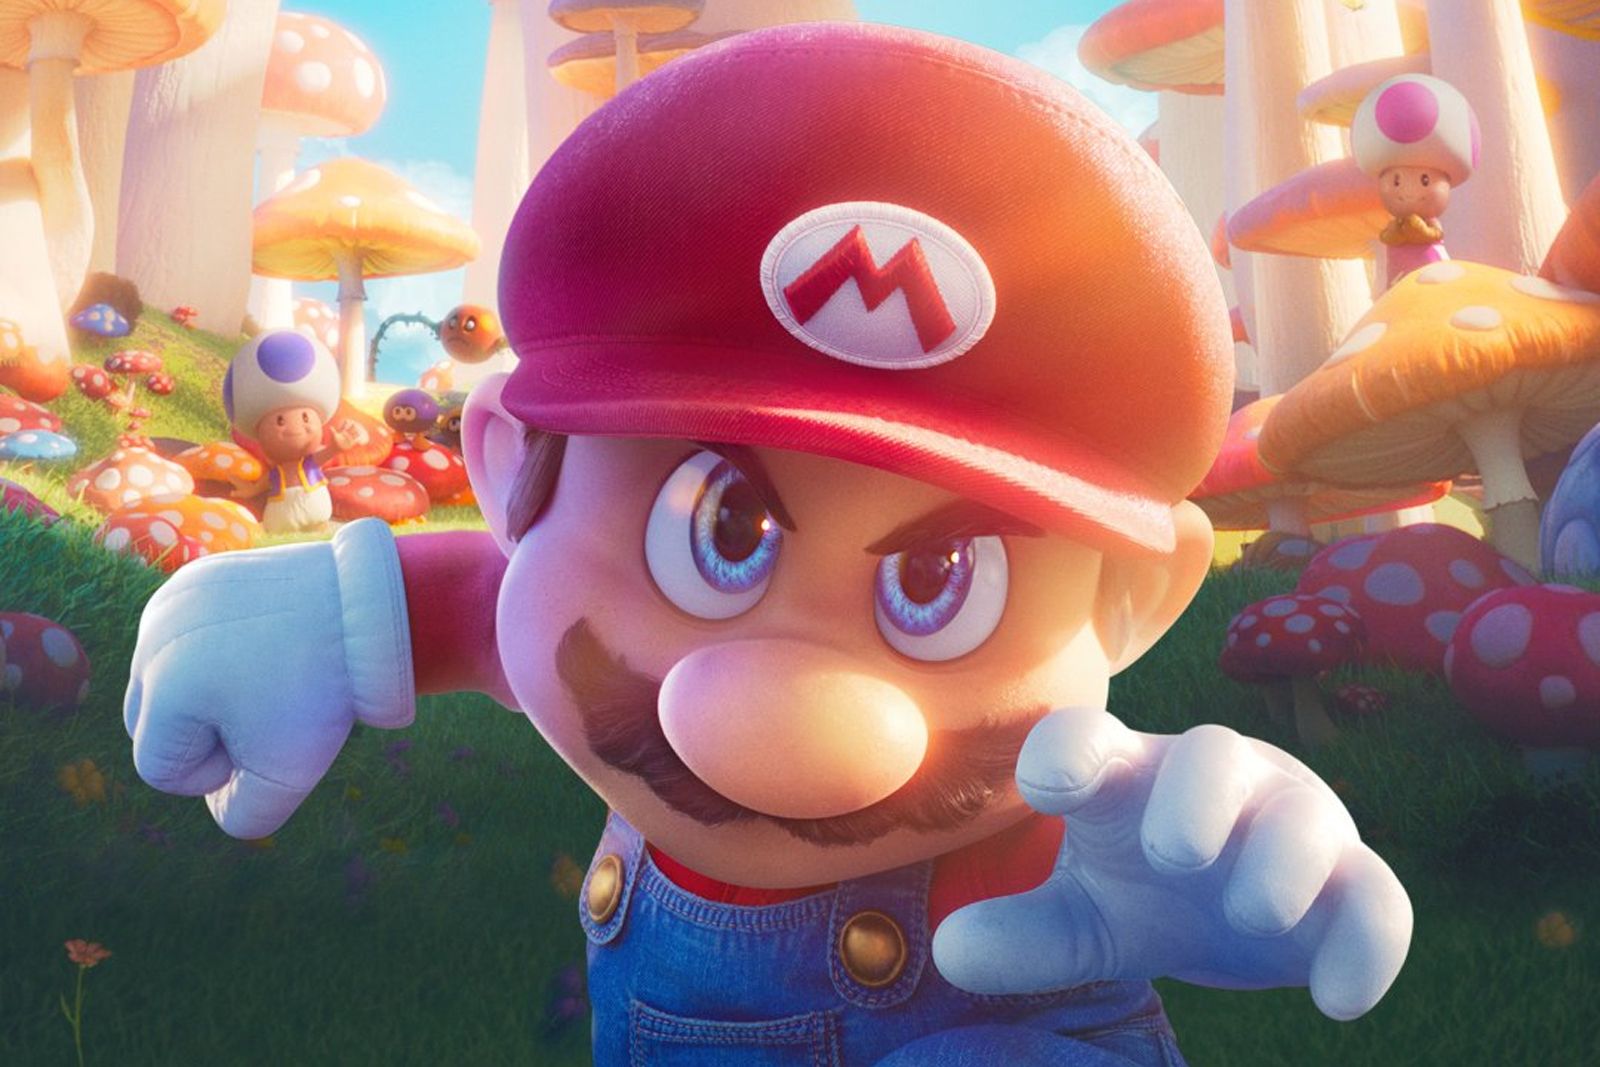 Filme de Super Mario tem elenco escalado e data de estreia - Outer